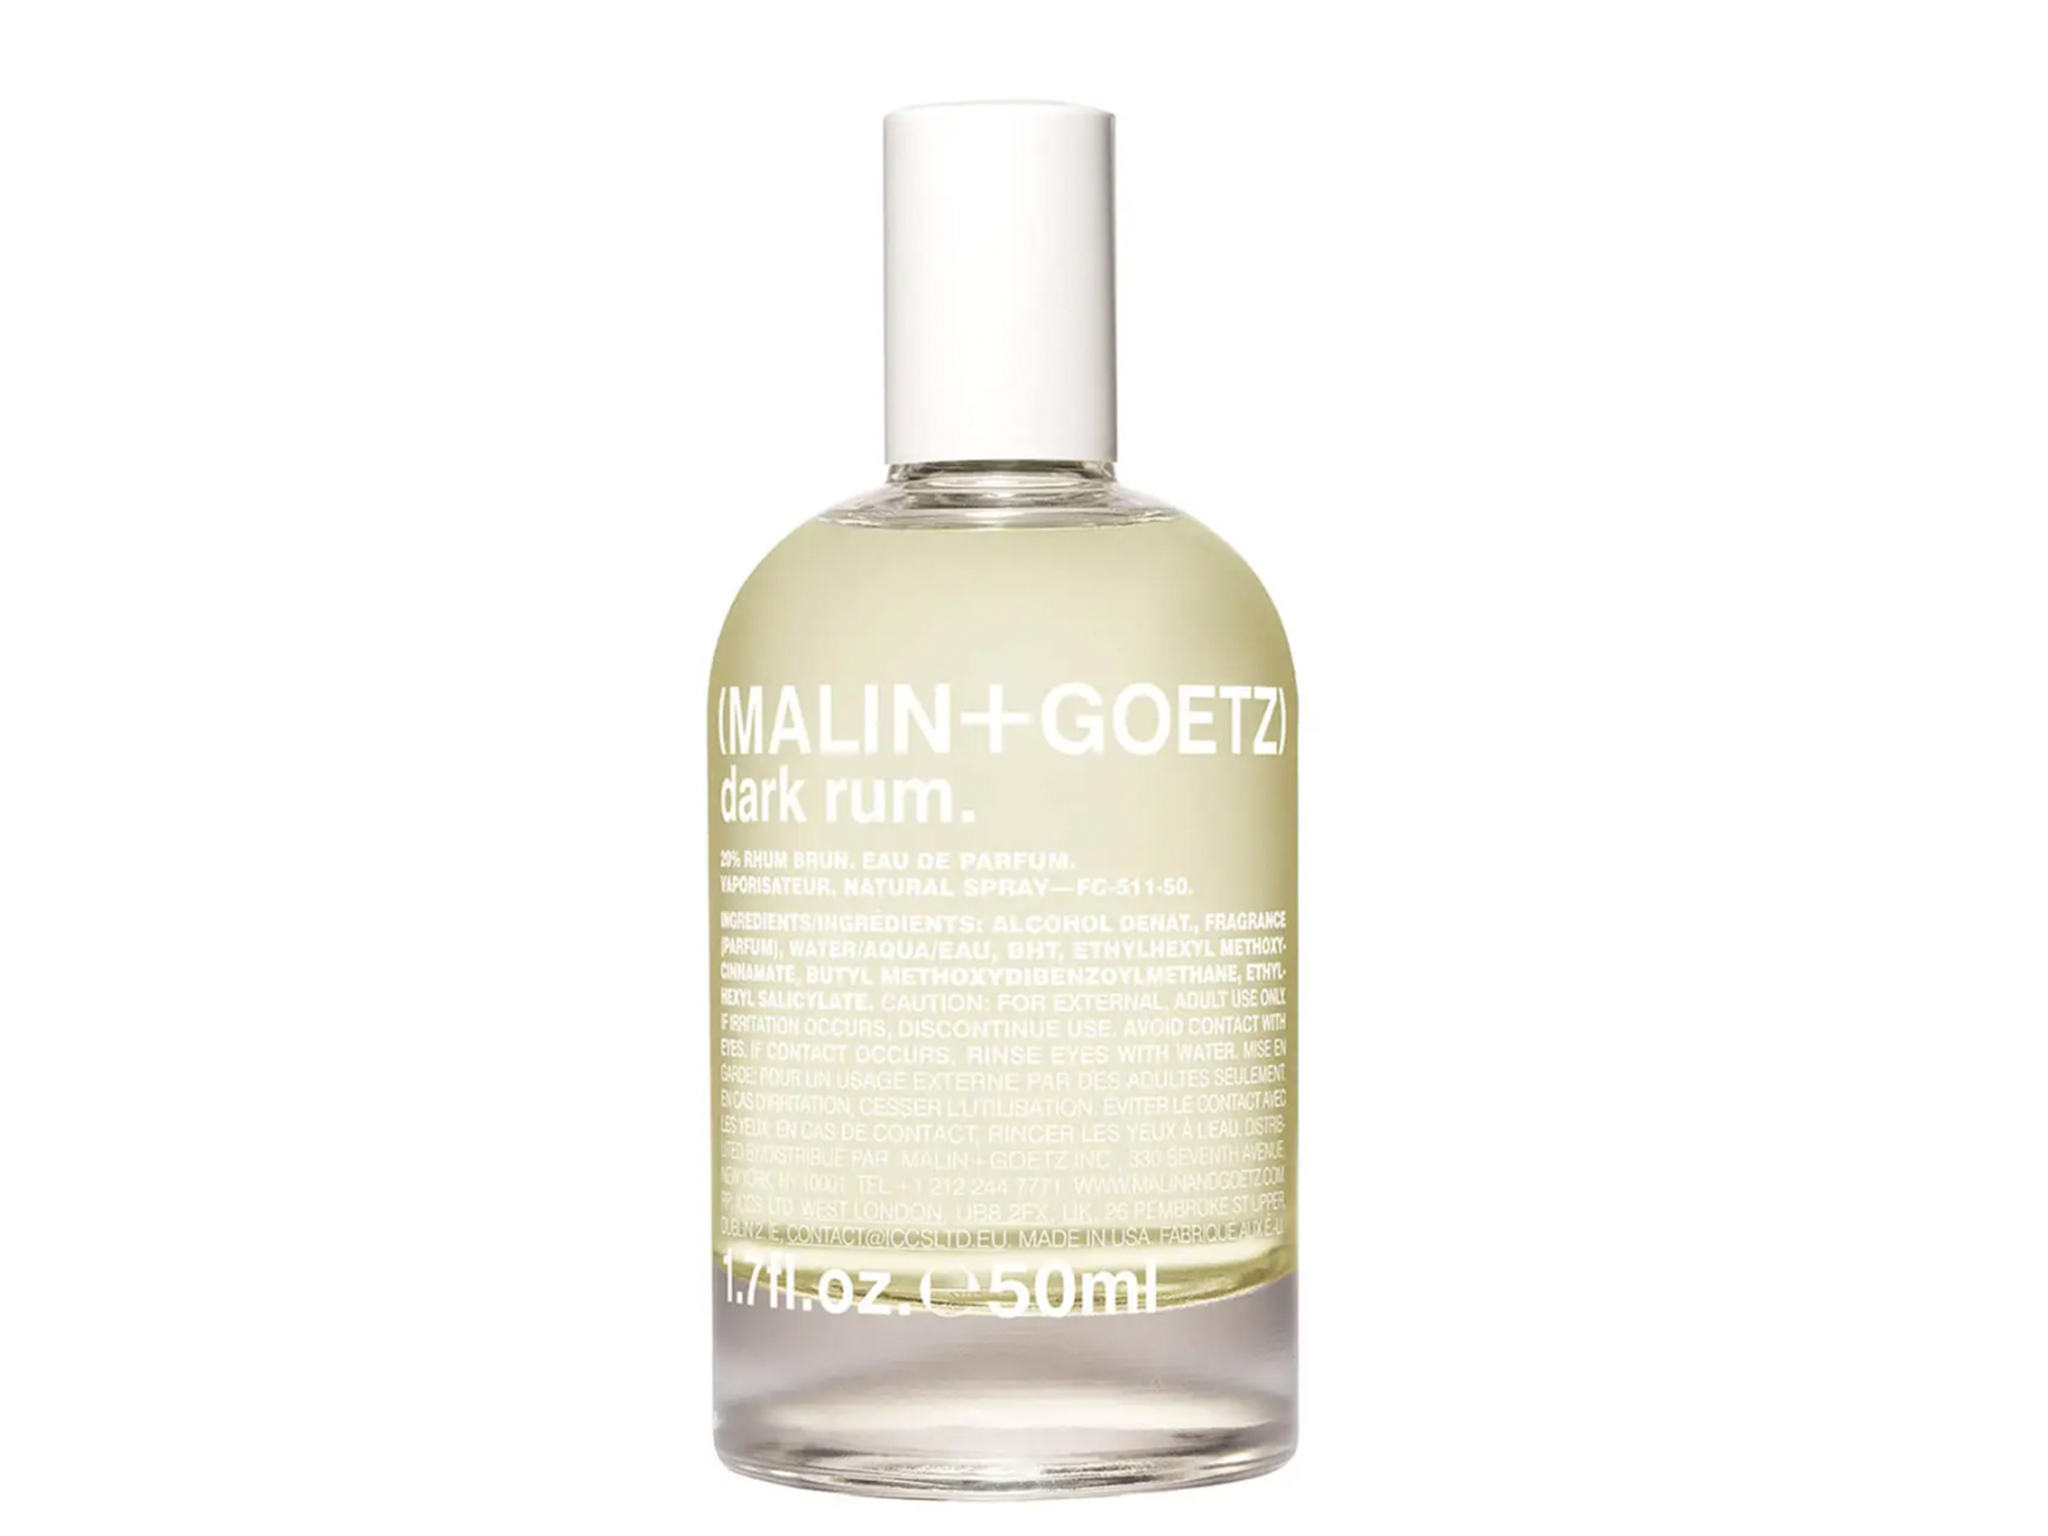 Malin + Goetz dark rum eau de parfum-indybest